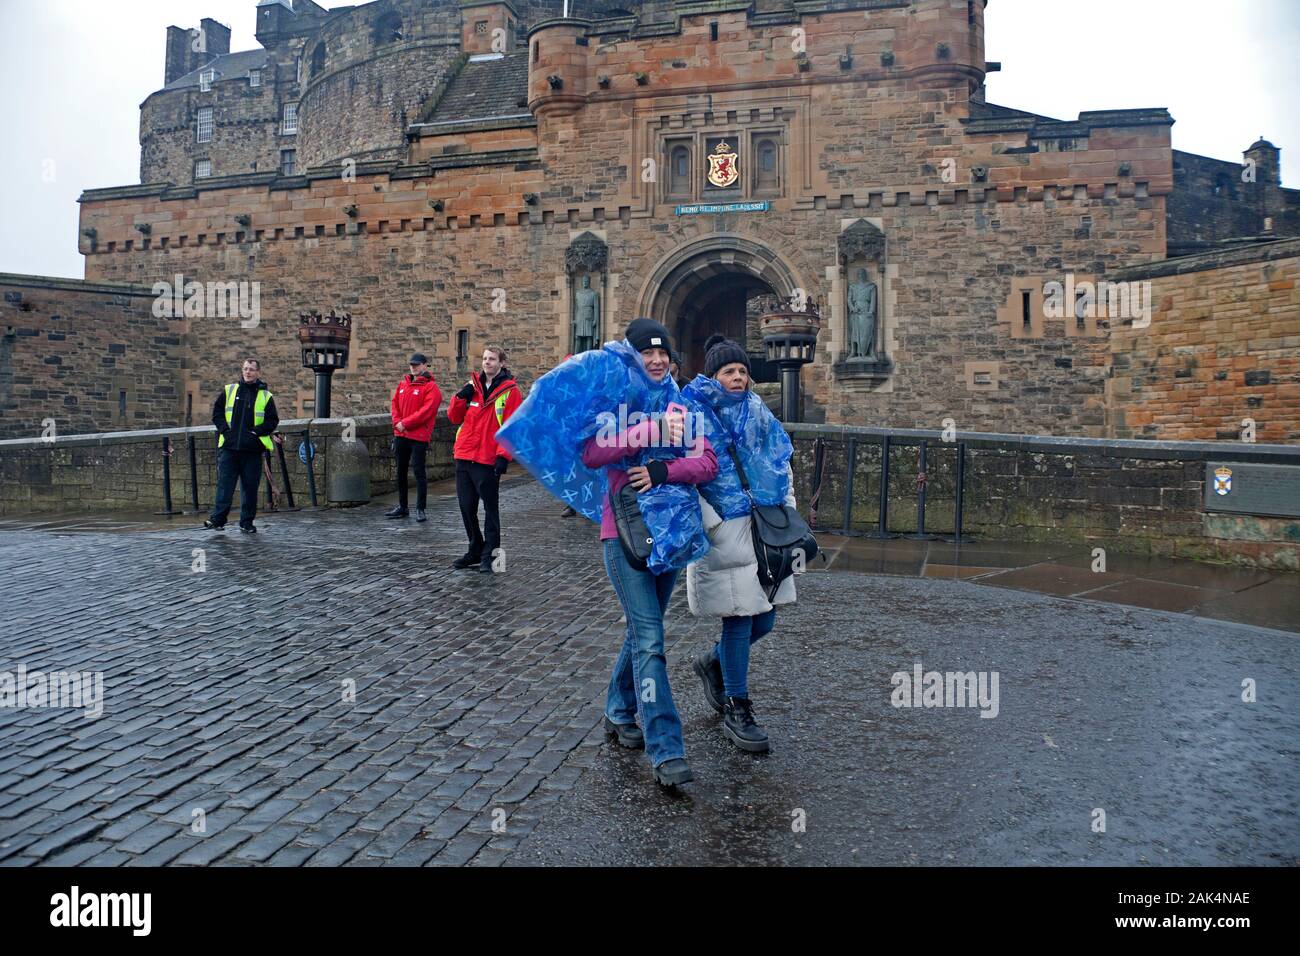 Edinburgh, Schottland, Großbritannien. 7. Januar 2020. Das Edinburgh Castle geschlossen für den Tag um 11.30 Uhr durch eine gelbe Warnmeldung für extrem hohe Winde. Wind SSW 50 km/h mögliche Böen von 87 km/h. Diese beiden argentinischen Damen mit ihrer schottischen Umhänge wogenden waren enttäuscht abgewiesen werden. Stockfoto